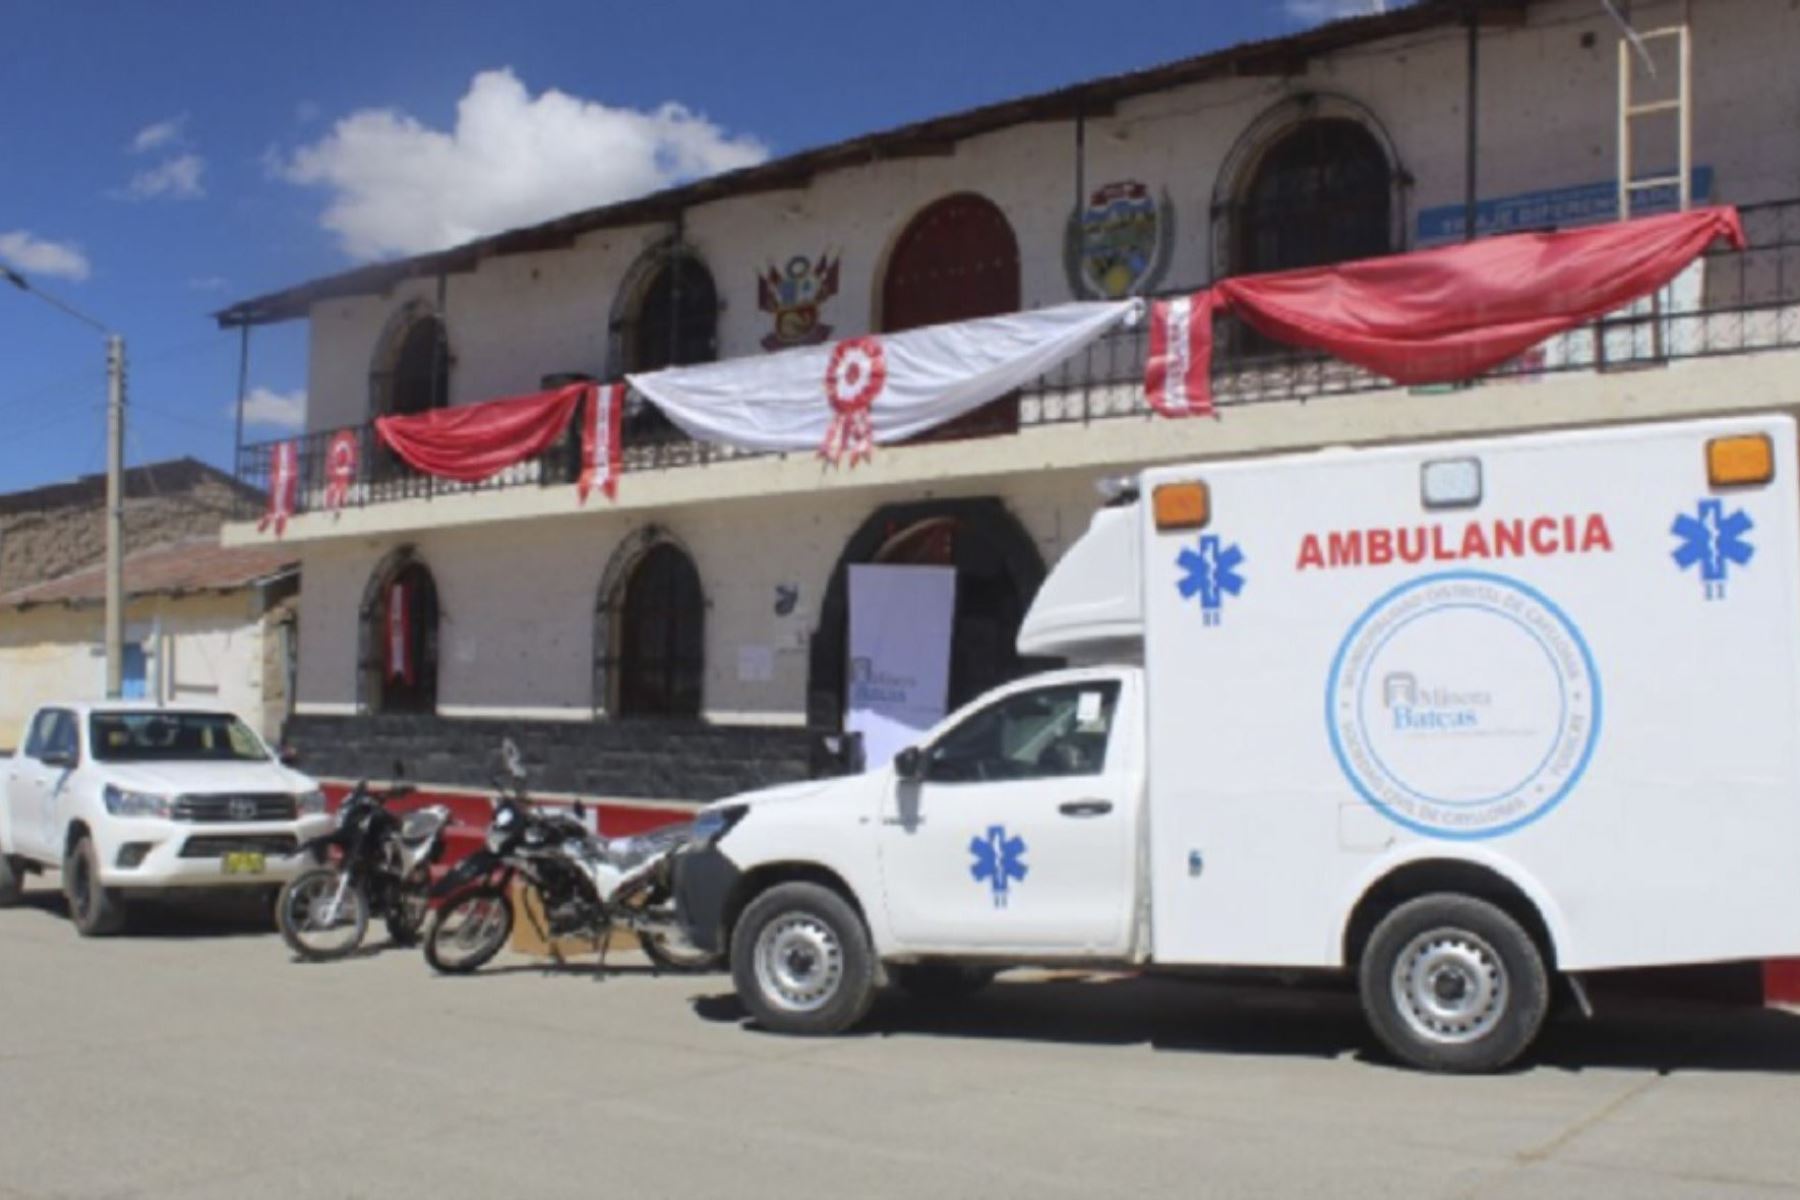 El centro de salud de Caylloma, ubicado en la provincia arequipeña del mismo nombre, recibió una ambulancia tipo II, una camioneta 4x4, dos motos lineales y dos esterilizadores, equipos que permitirán auxiliar a la comunidad en la actual emergencia sanitaria por la pandemia del covid-19.